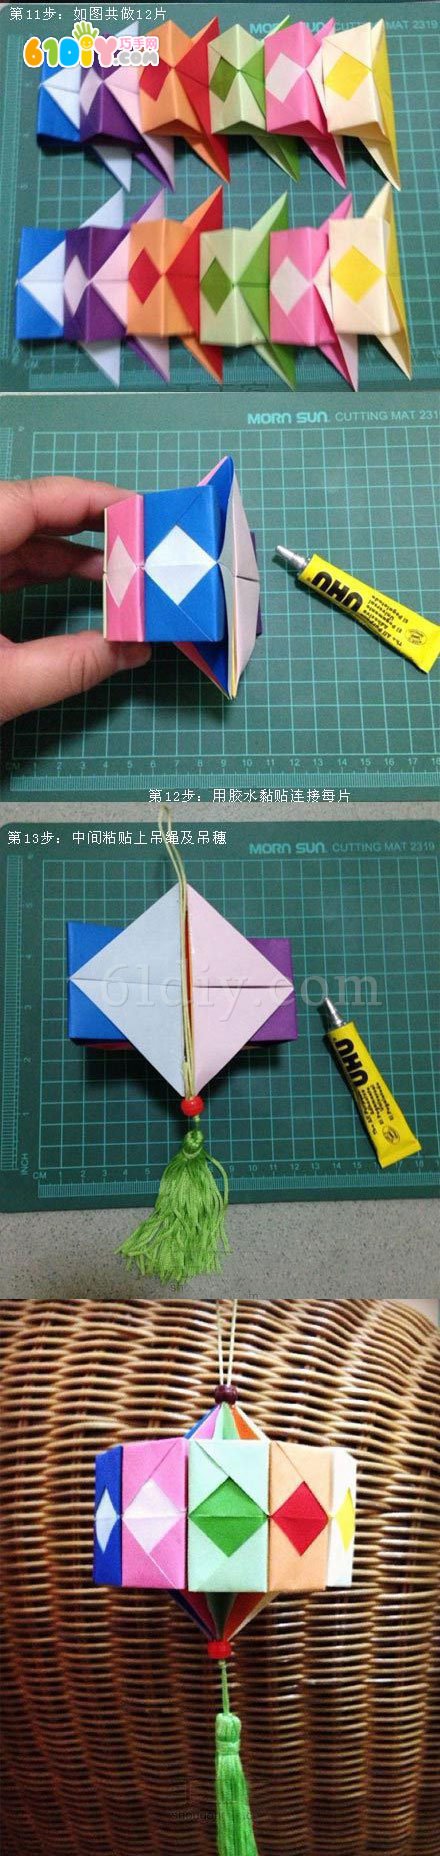 手折灯笼的做法折纸图片